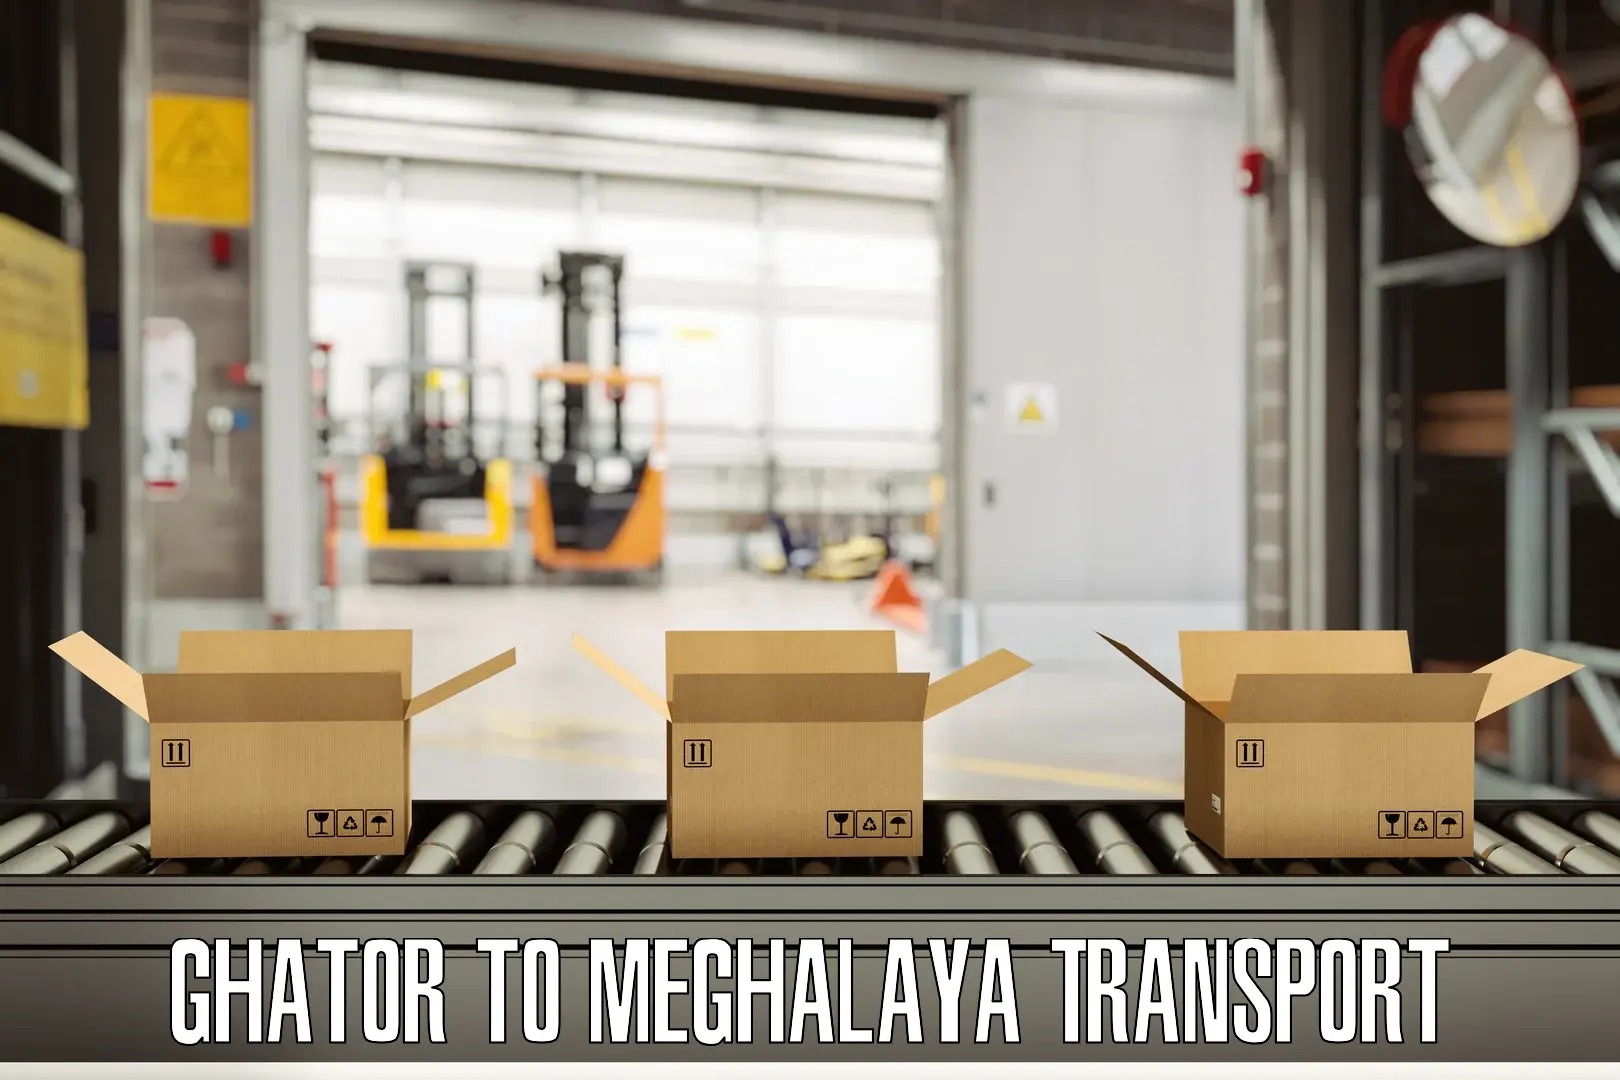 Furniture transport service Ghator to Meghalaya